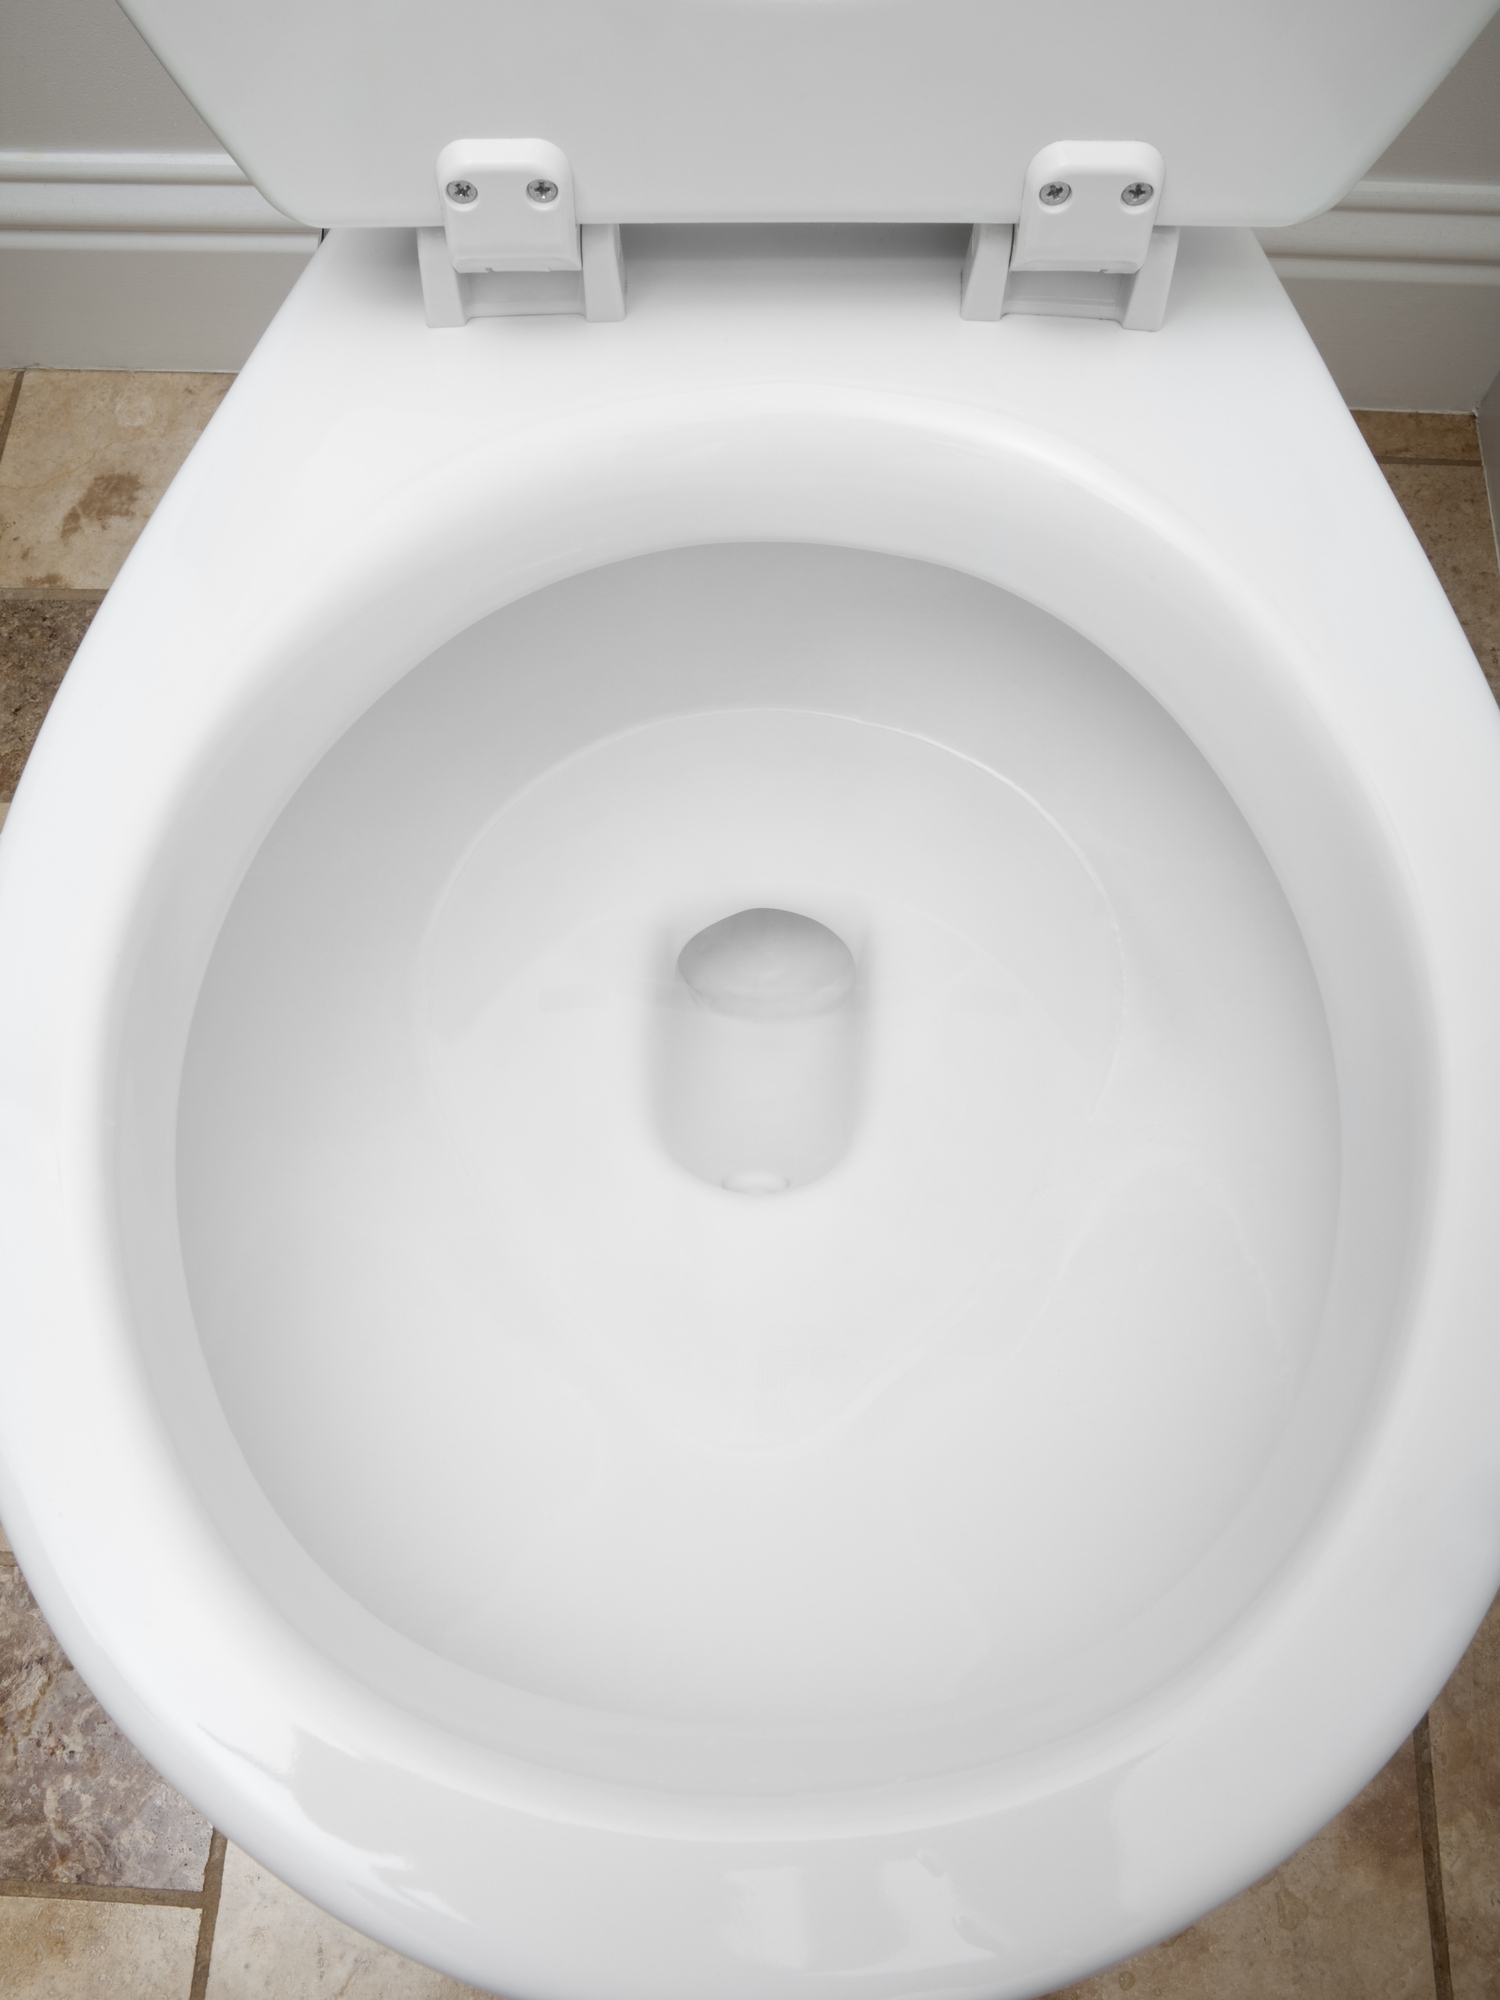 Toilet bowl - stock photo